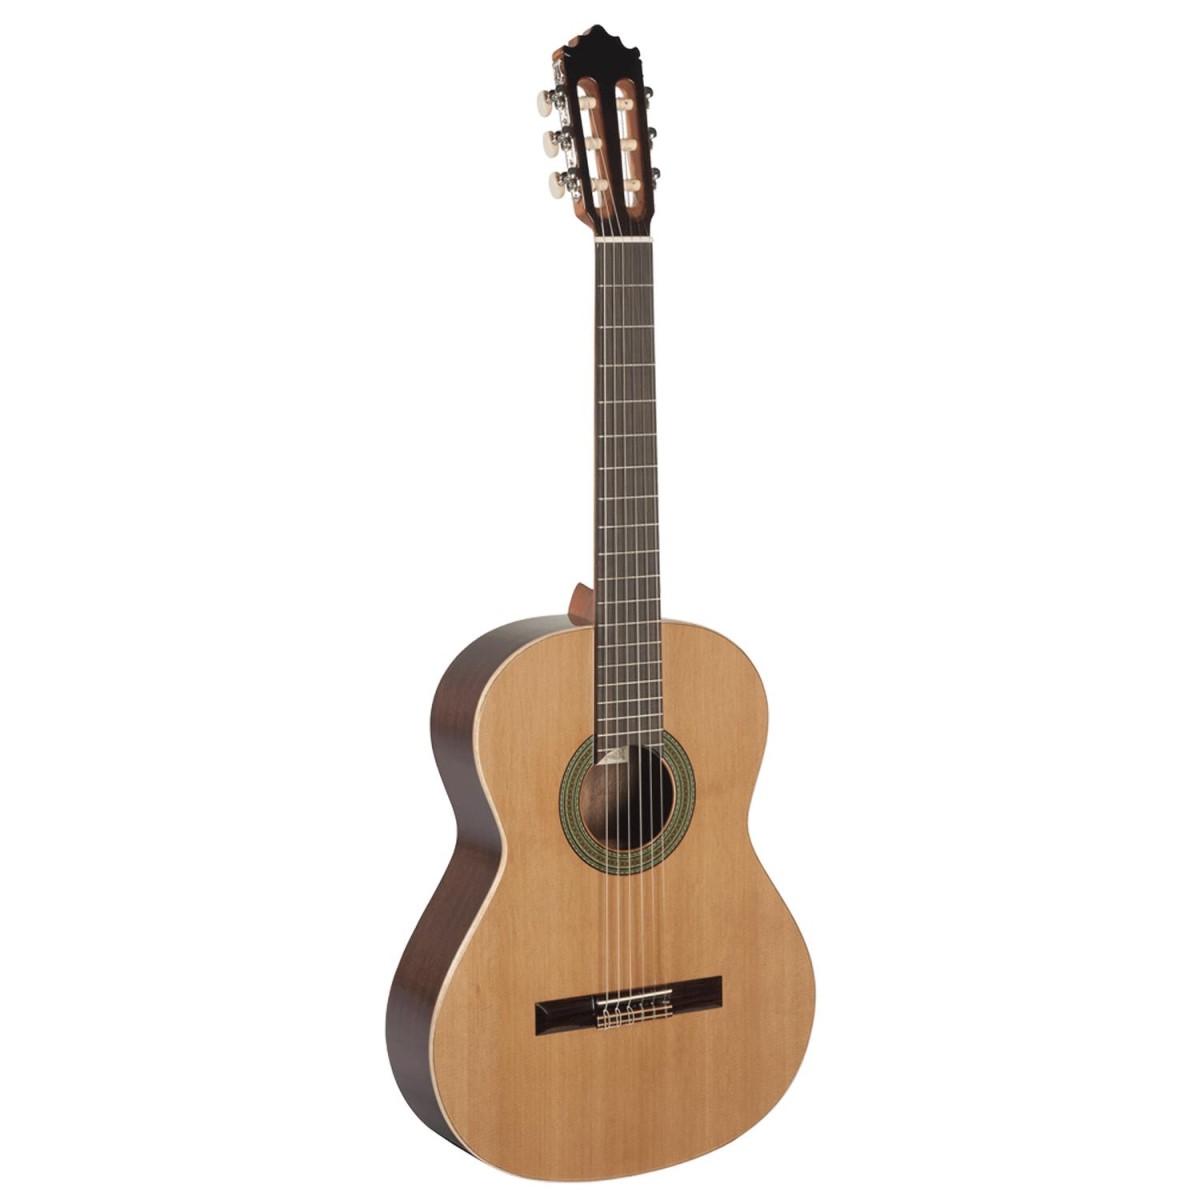 Comprar Guitarra Paco Castillo al mejor precio en Prieto M�sica